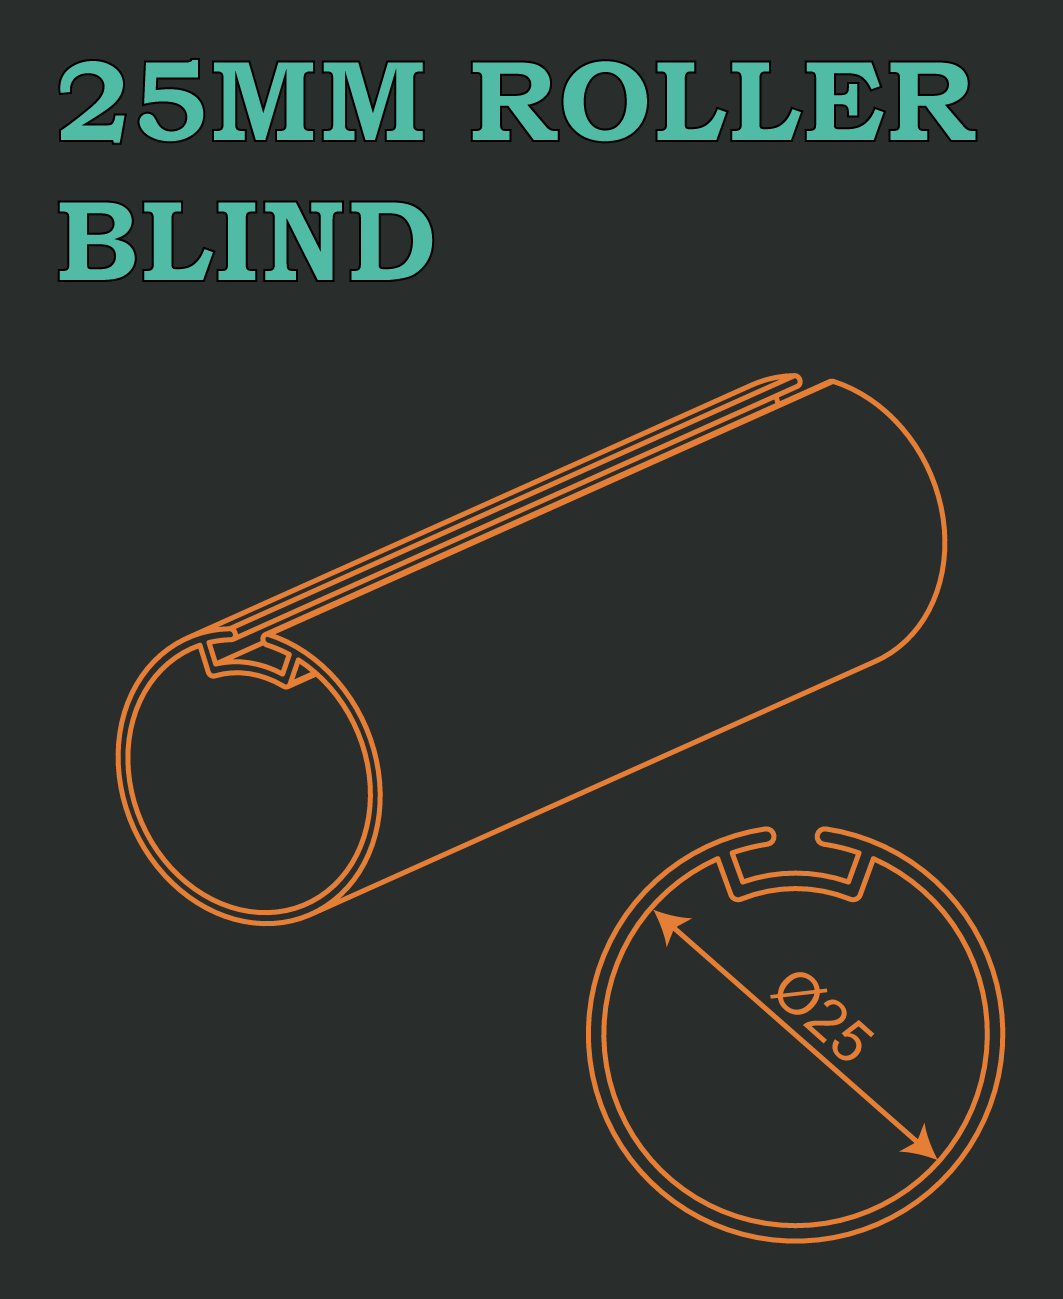 25MM ROLLER BLIND